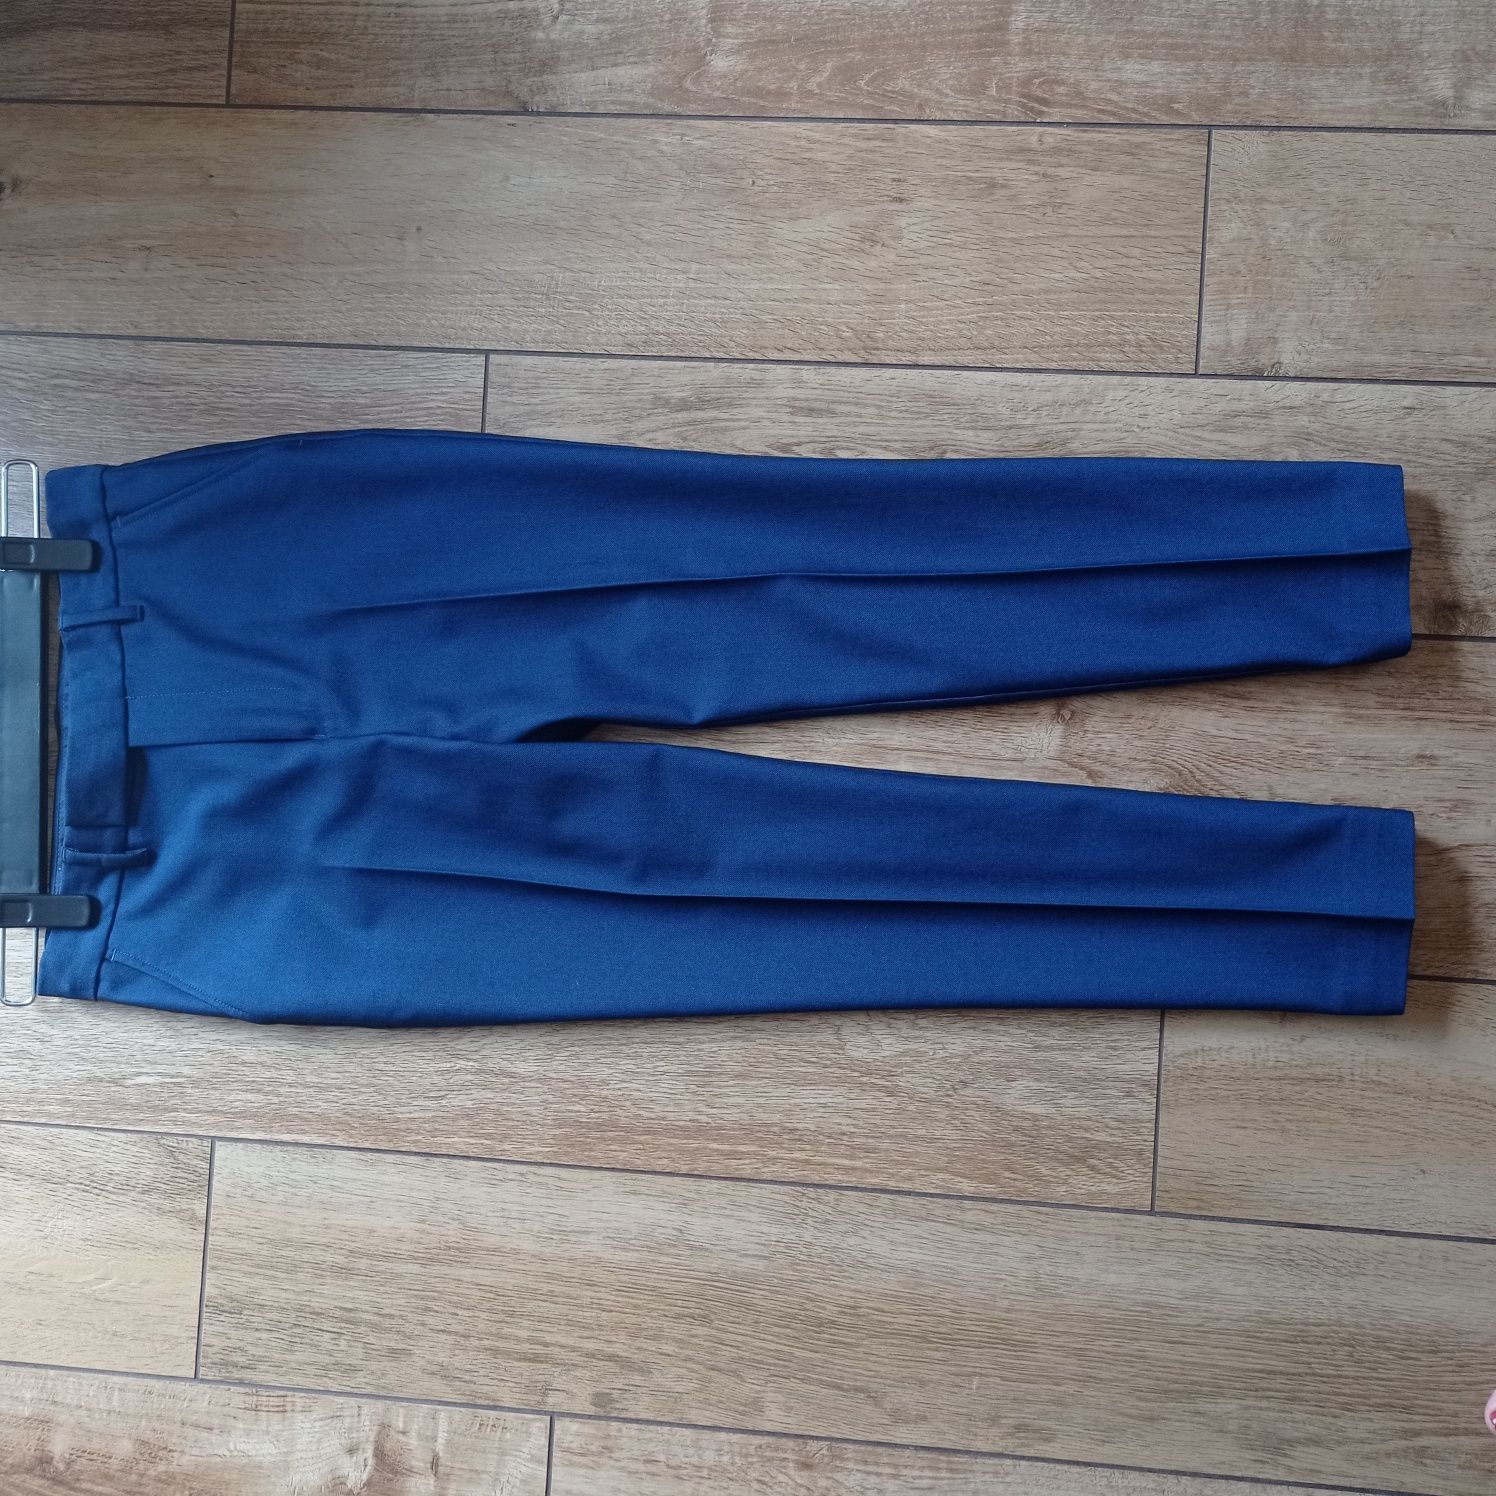 Eleganckie spodnie M&S, roz. 134-140cm (9-10 lat)